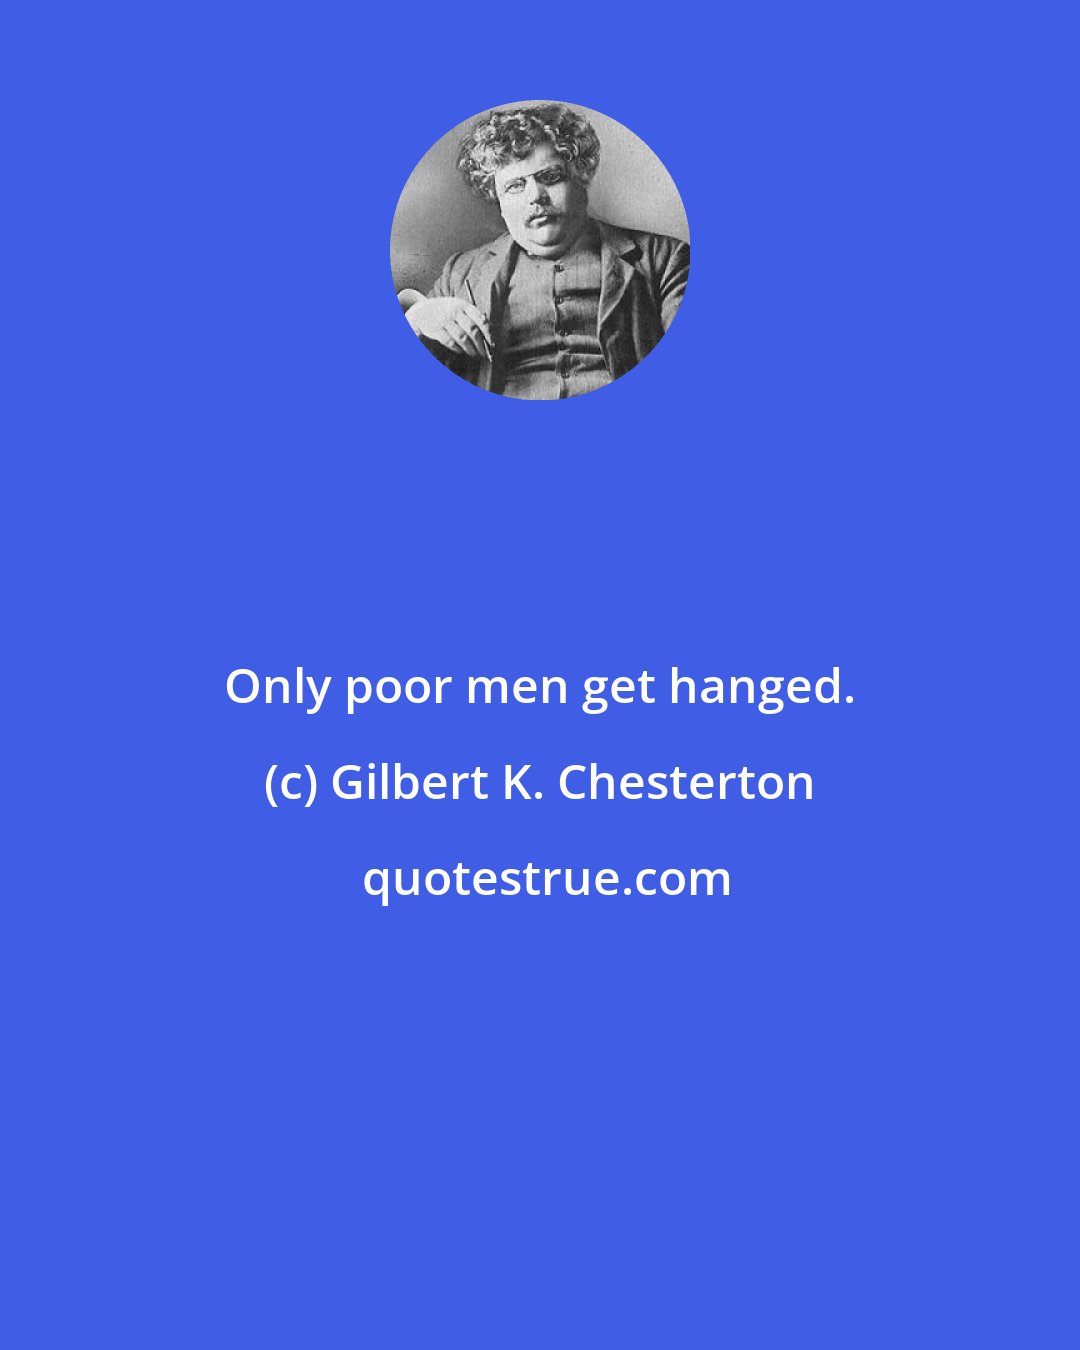 Gilbert K. Chesterton: Only poor men get hanged.